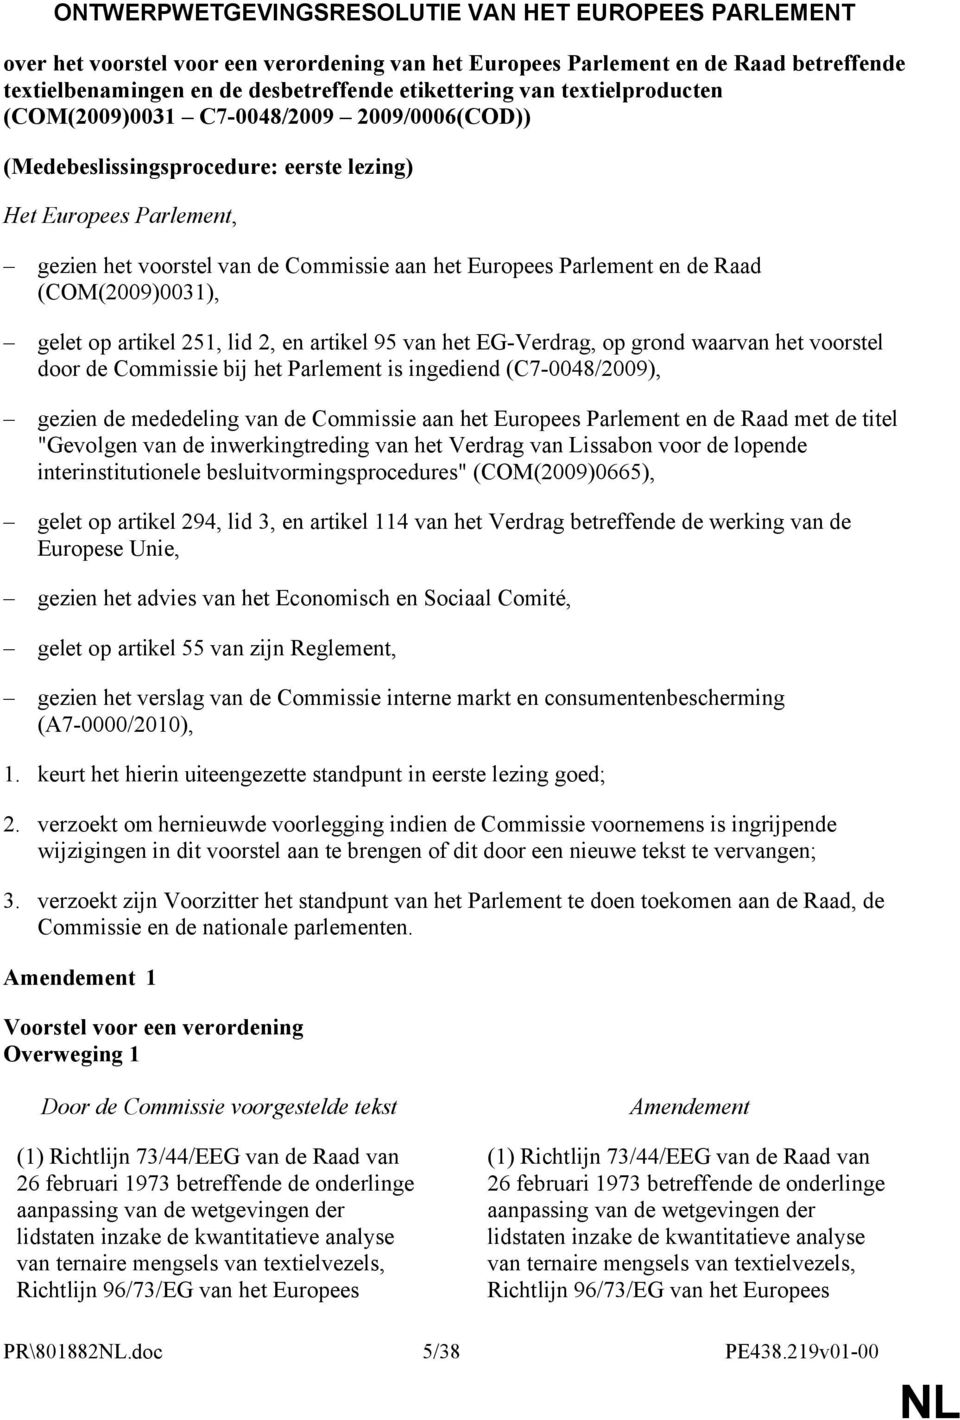 Raad (COM(2009)0031), gelet op artikel 251, lid 2, en artikel 95 van het EG-Verdrag, op grond waarvan het voorstel door de Commissie bij het Parlement is ingediend (C7-0048/2009), gezien de